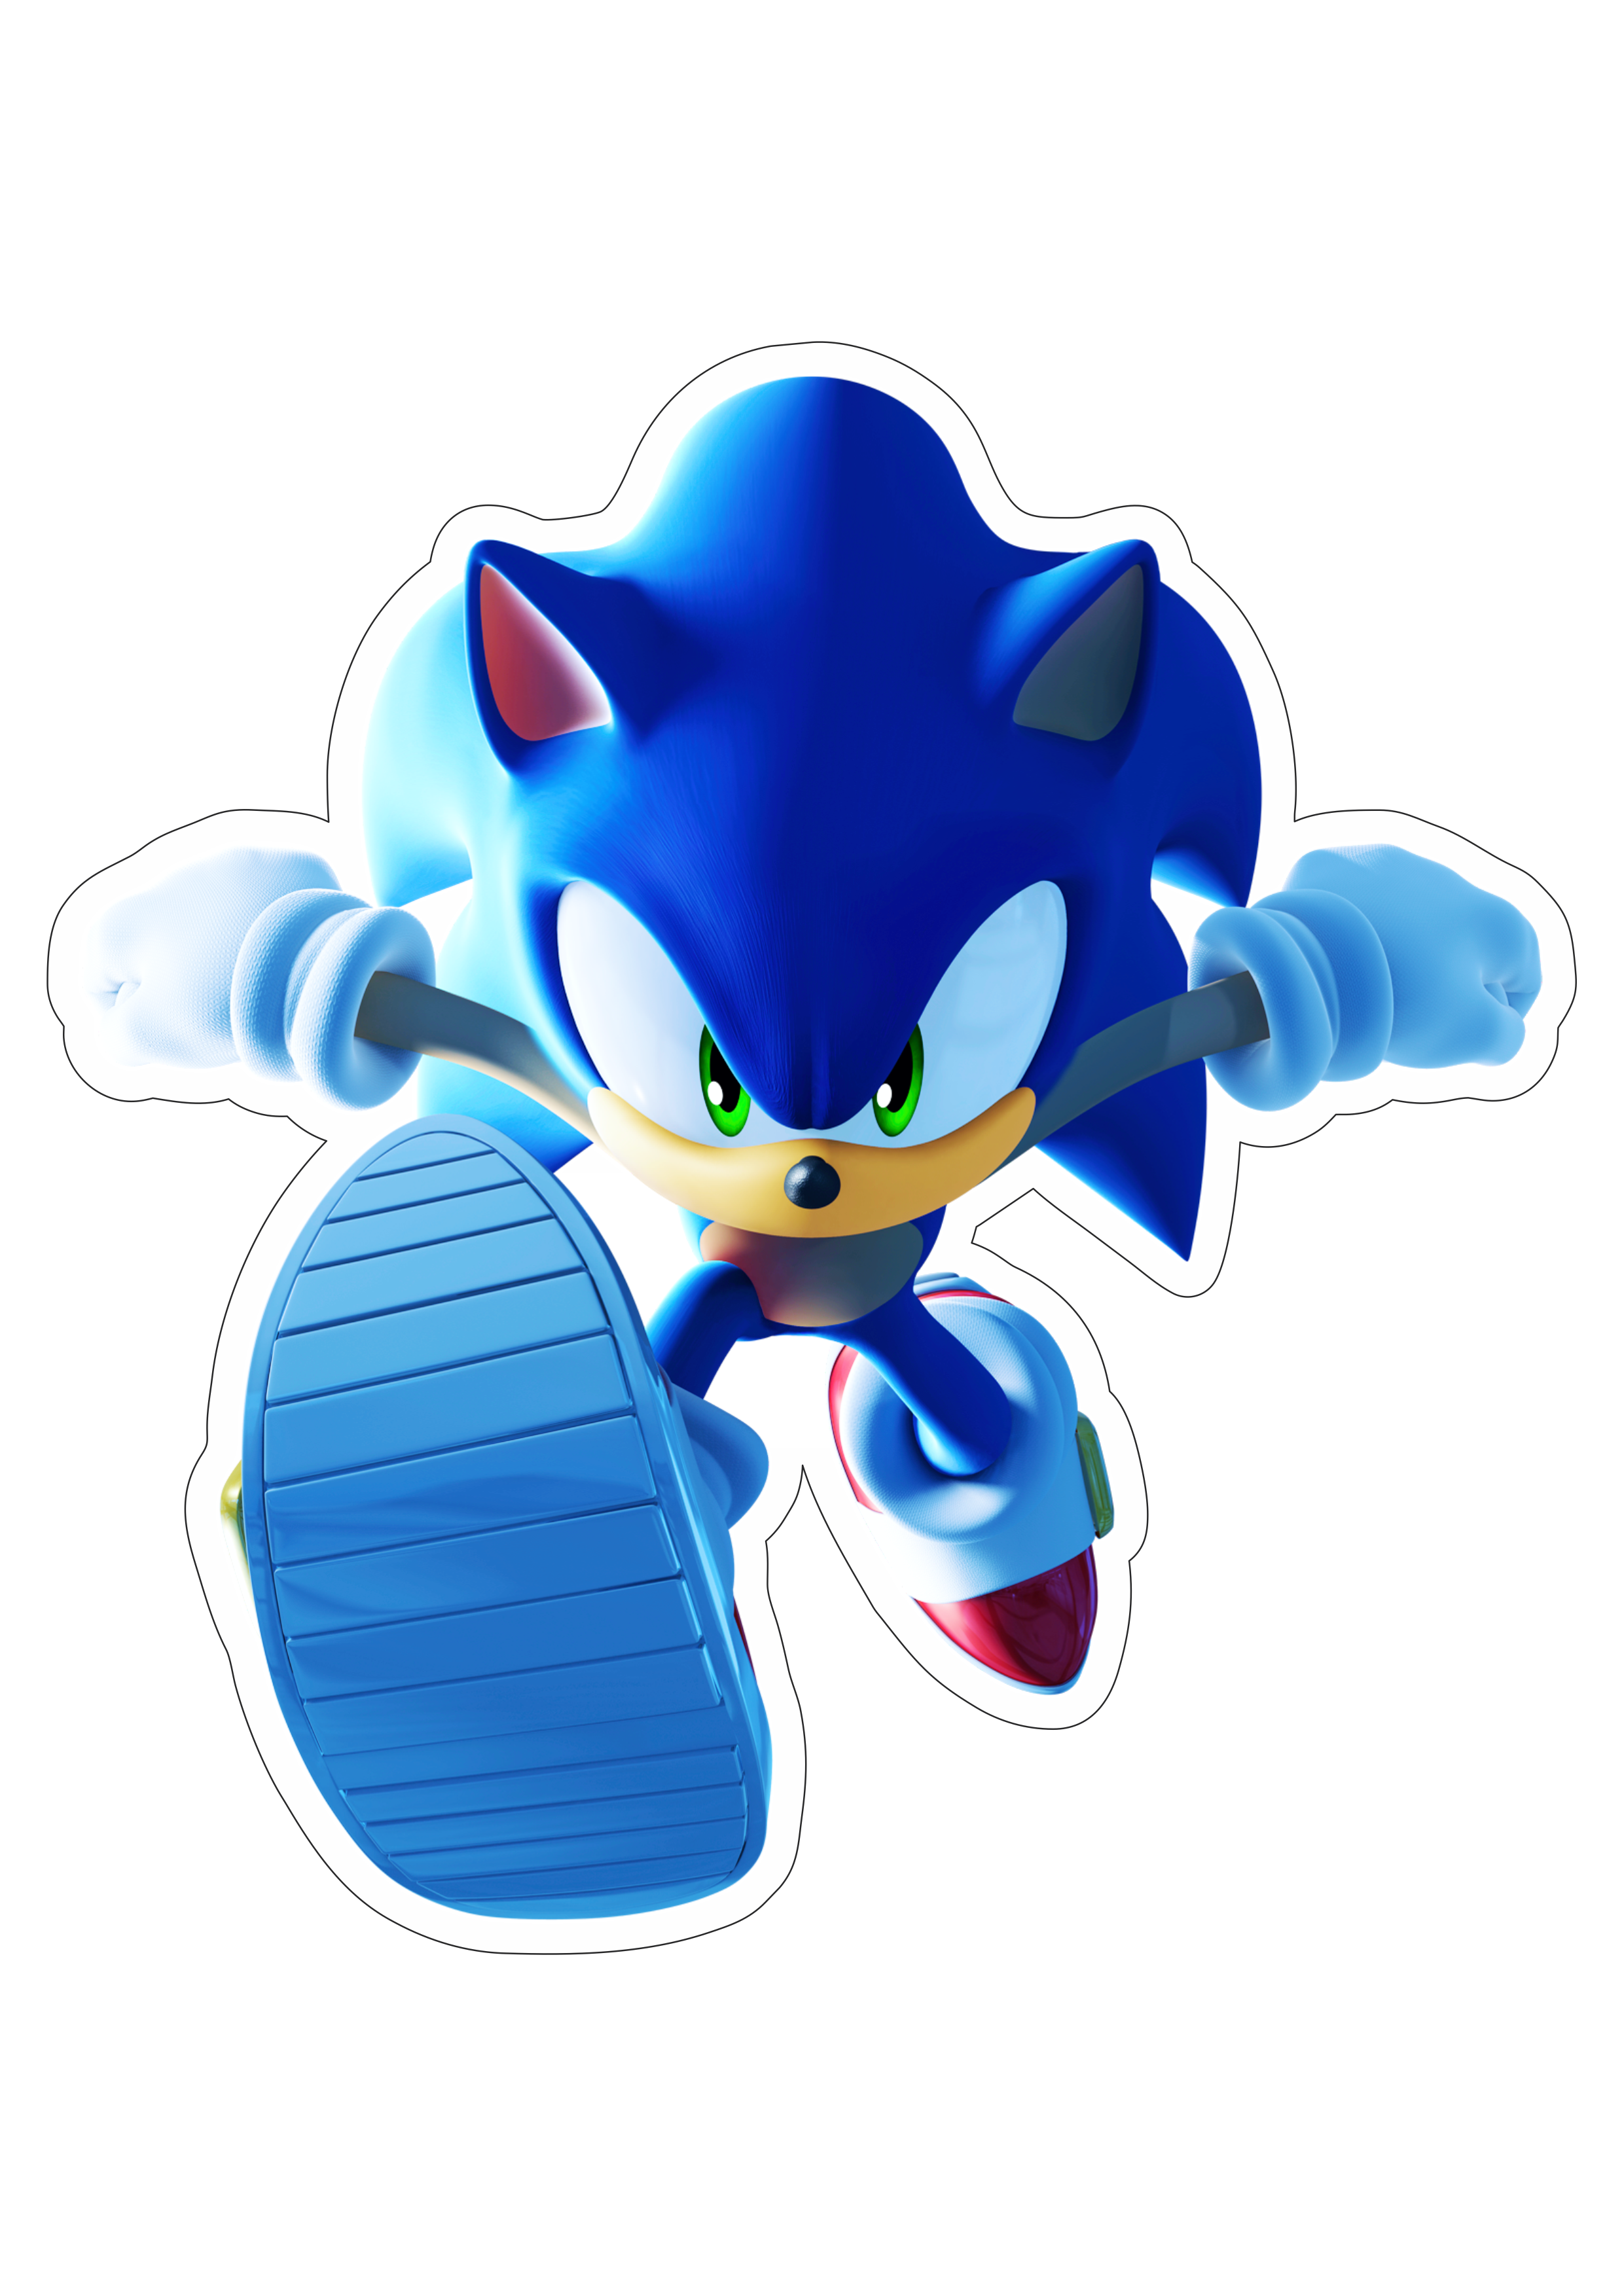 Sonic the hedgehog ouriço personagem de game aventura infantil artes gráficas design  imagem sem fundo com contorno png